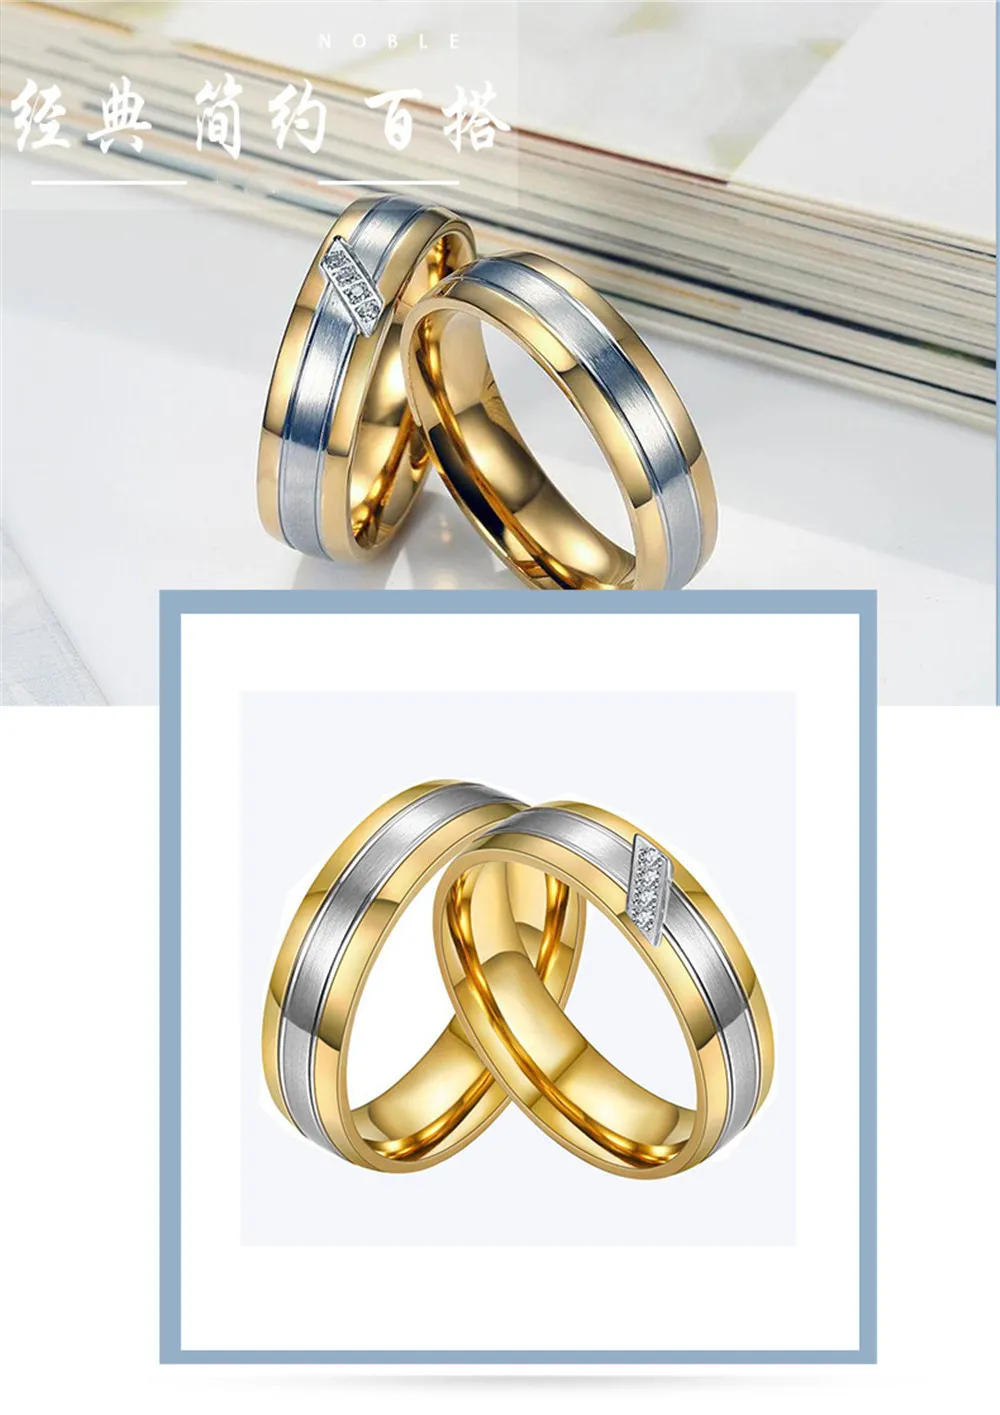 Çiftler Erkekler İçin Halkalar Kadınları Onu AAA Zirkon Elmaslar Altın Ton Titanyum Paslanmaz Çelik Düğün Nişan Yüzük Seti Jewelry5665685